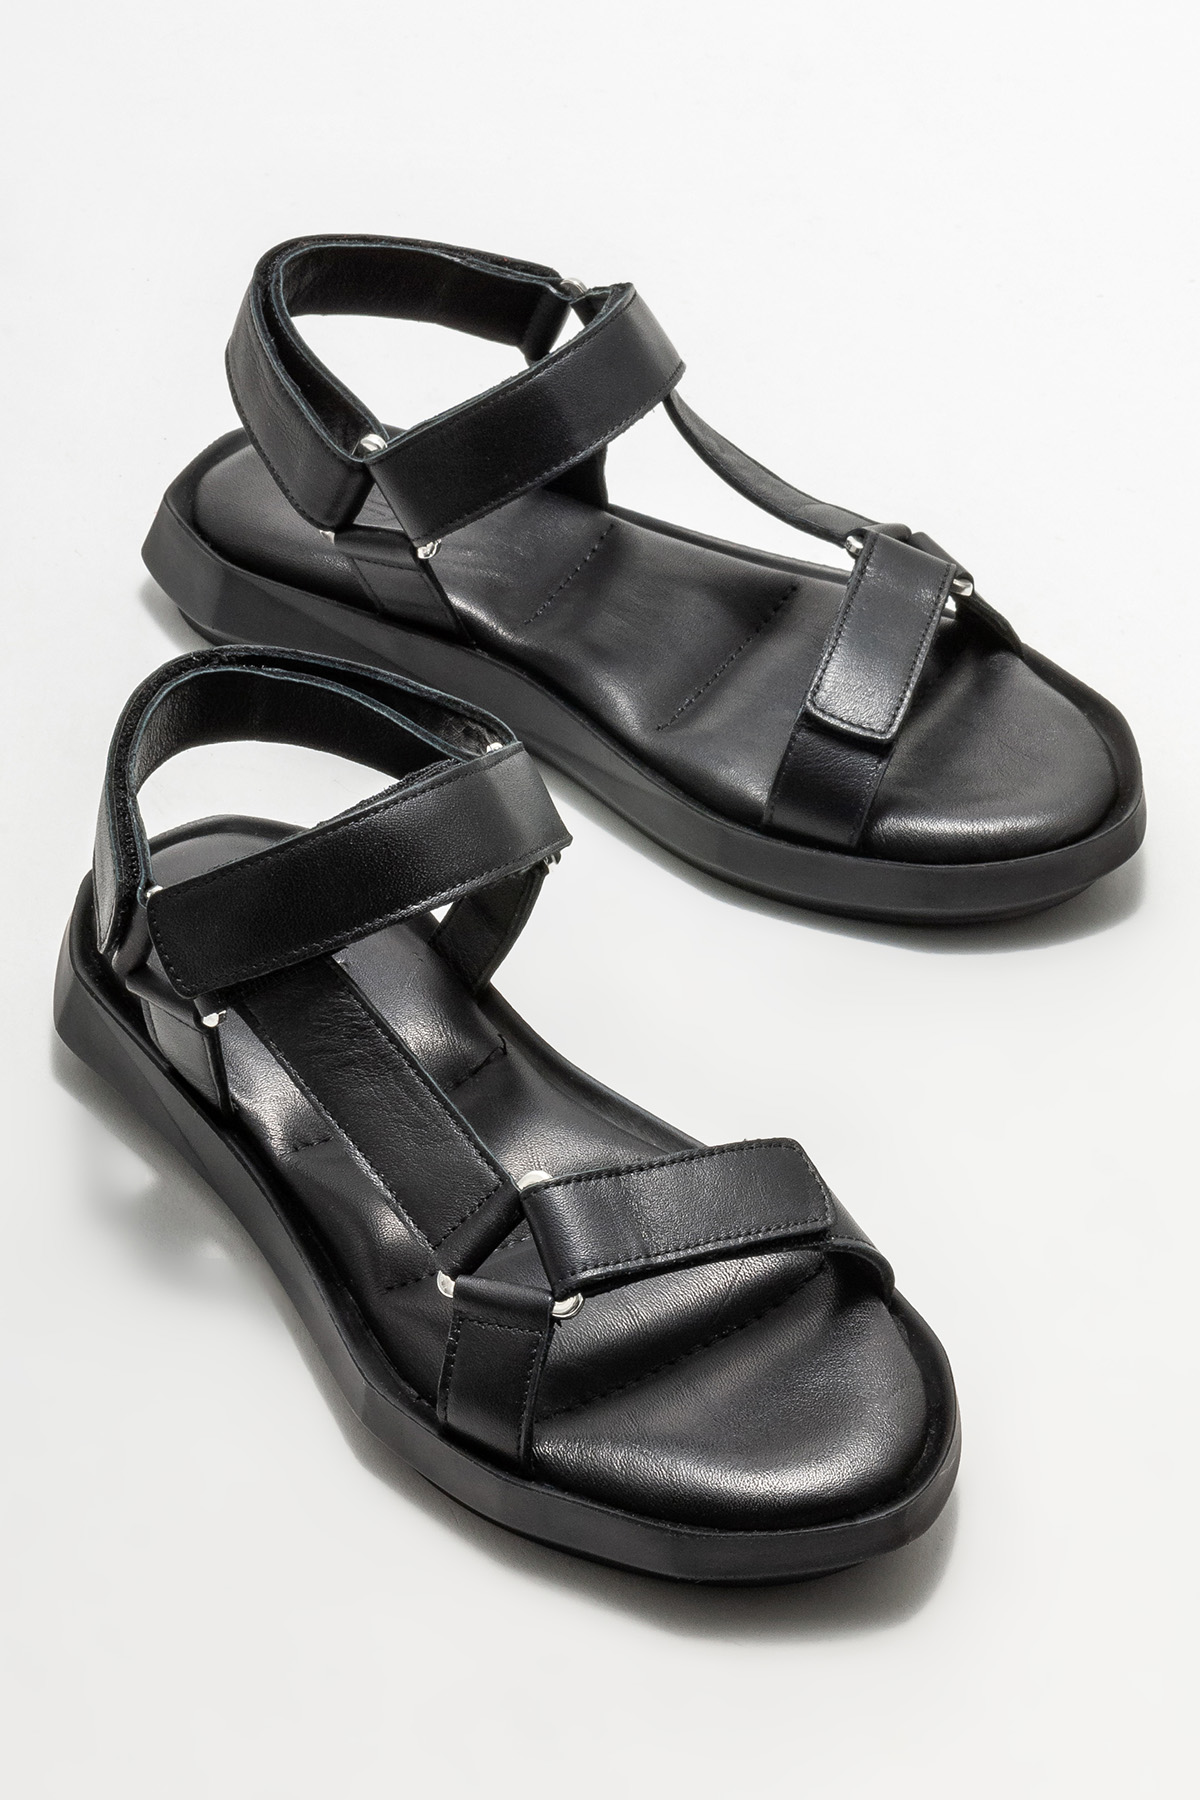 Siyah Deri Kadın Spor Sandalet Satın Al! NIENKE-01 Fiyatı | Elle Shoes